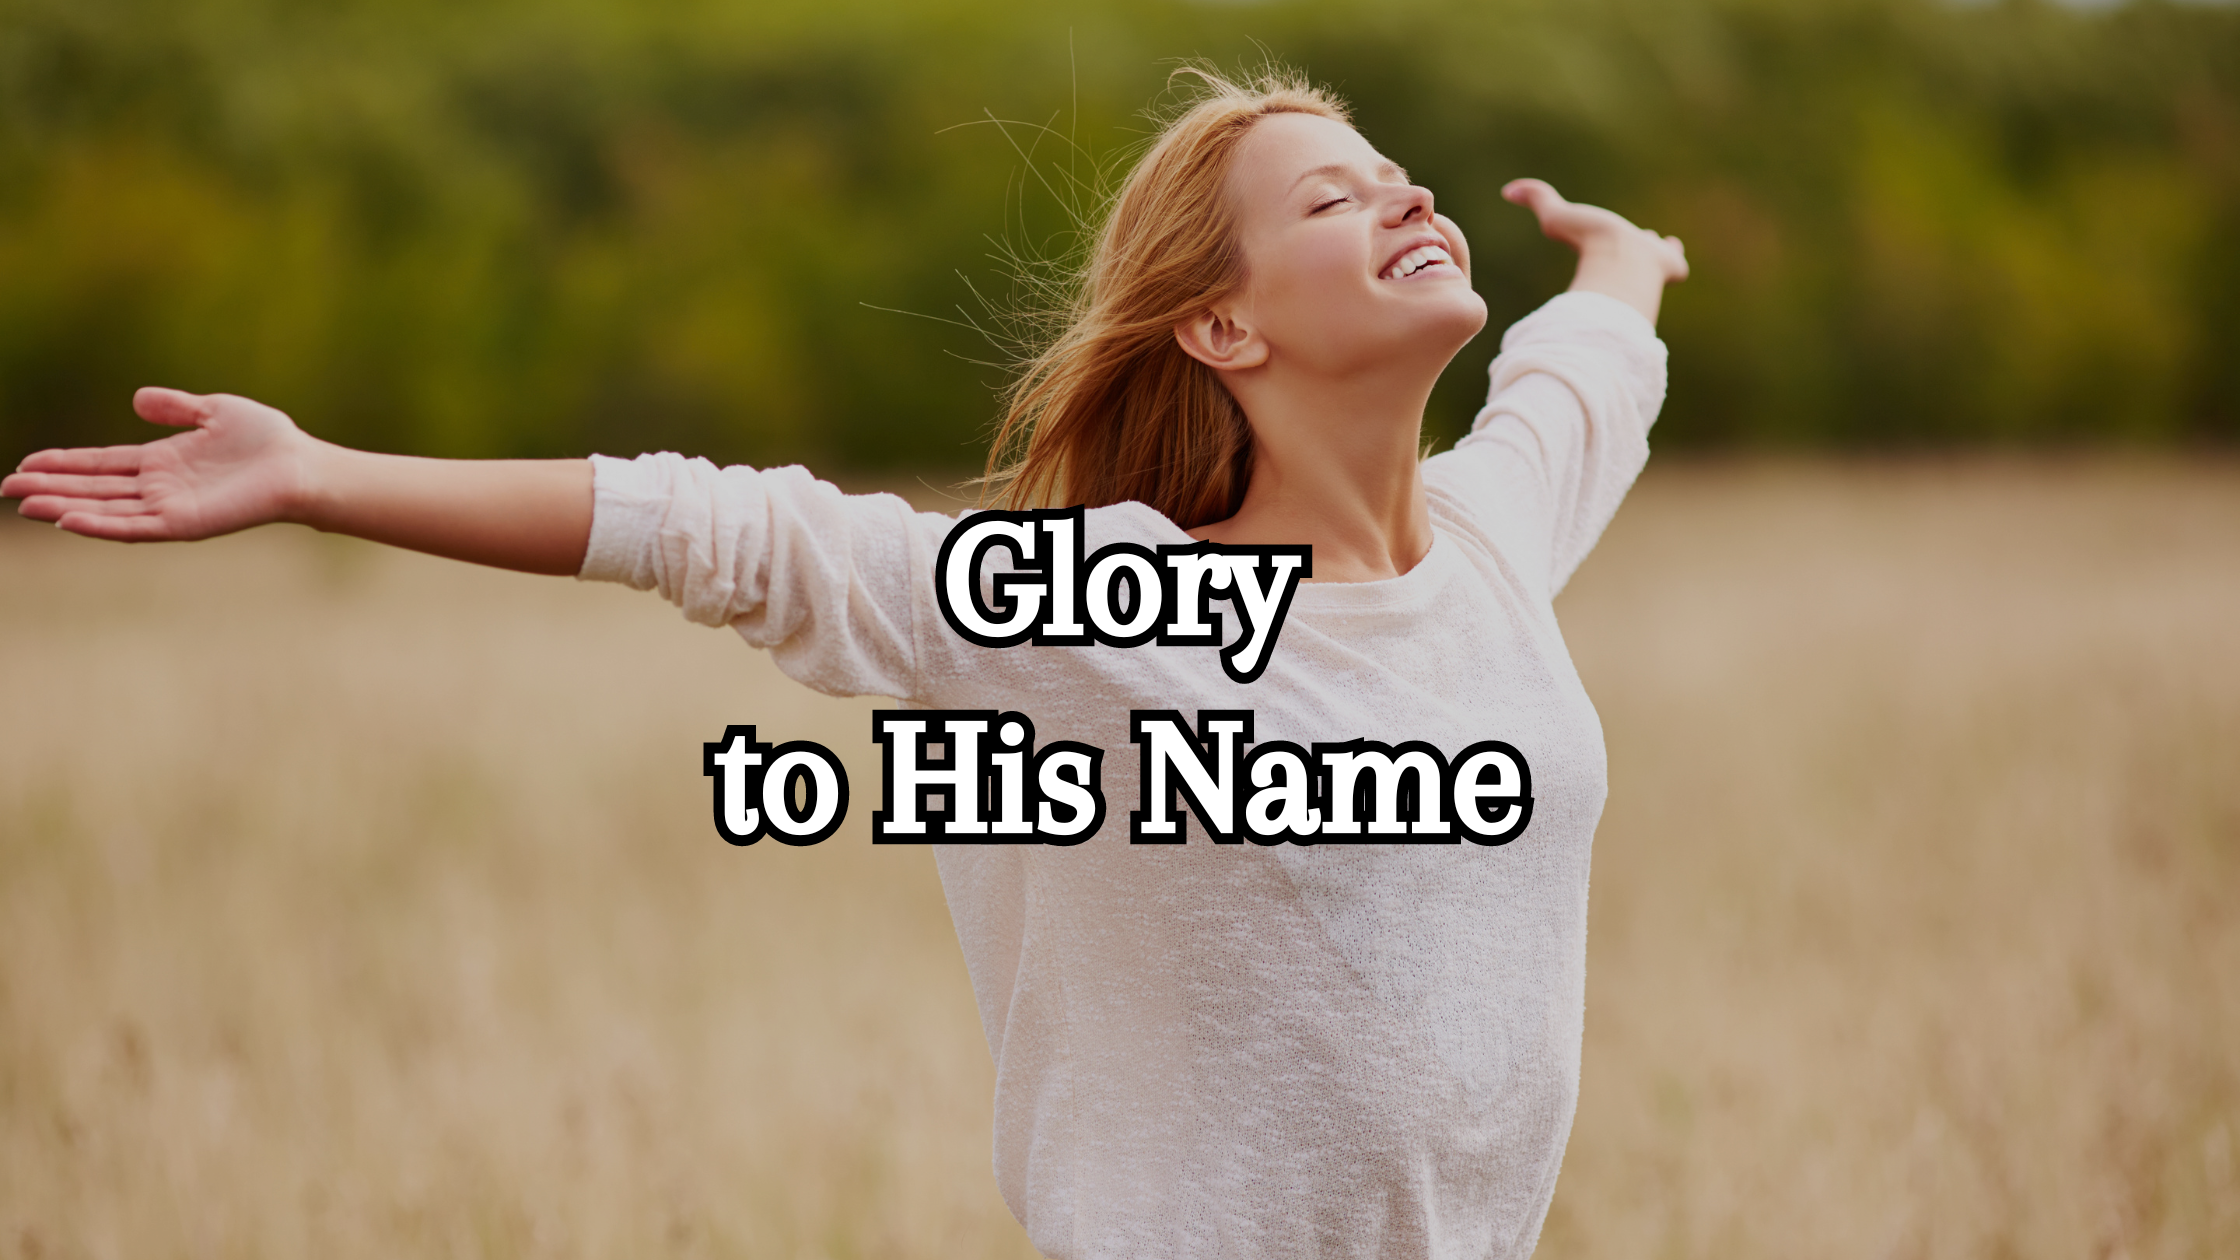 Glory to His Name